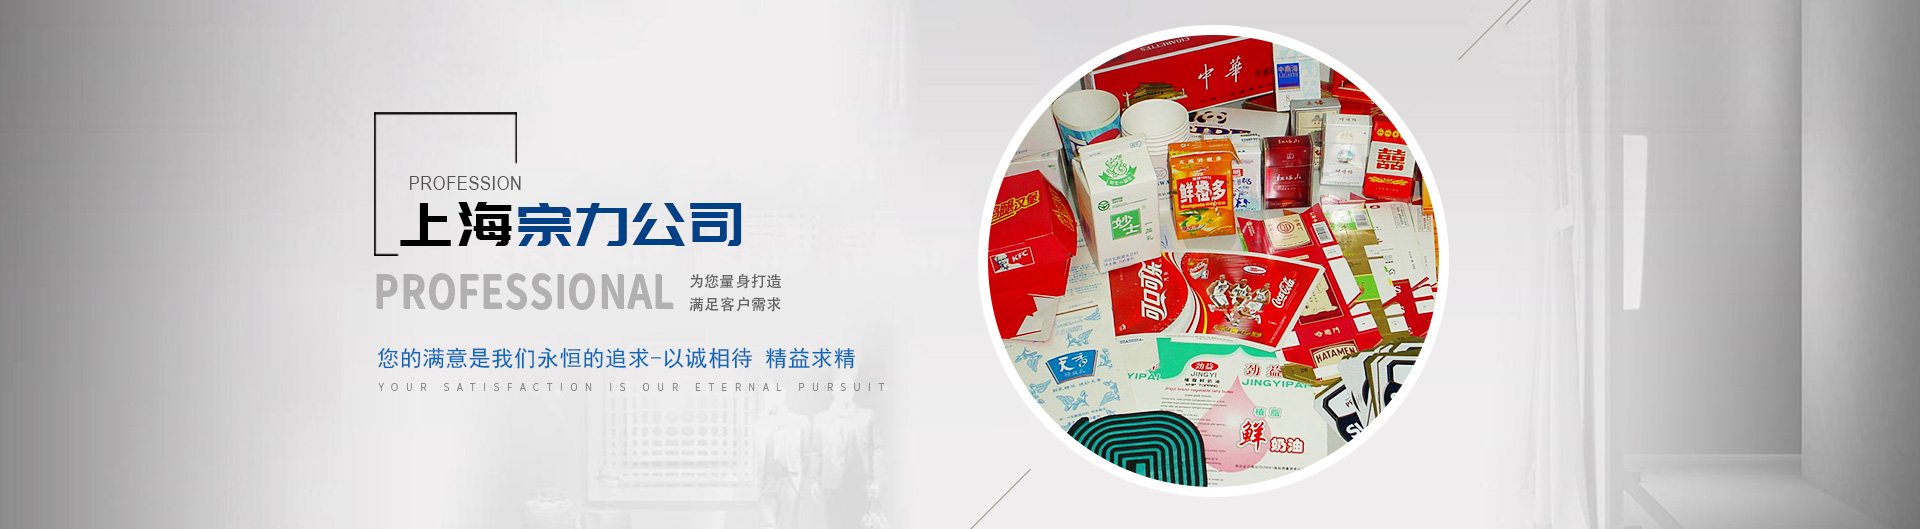 上海宗力印刷包裝機械有限公司